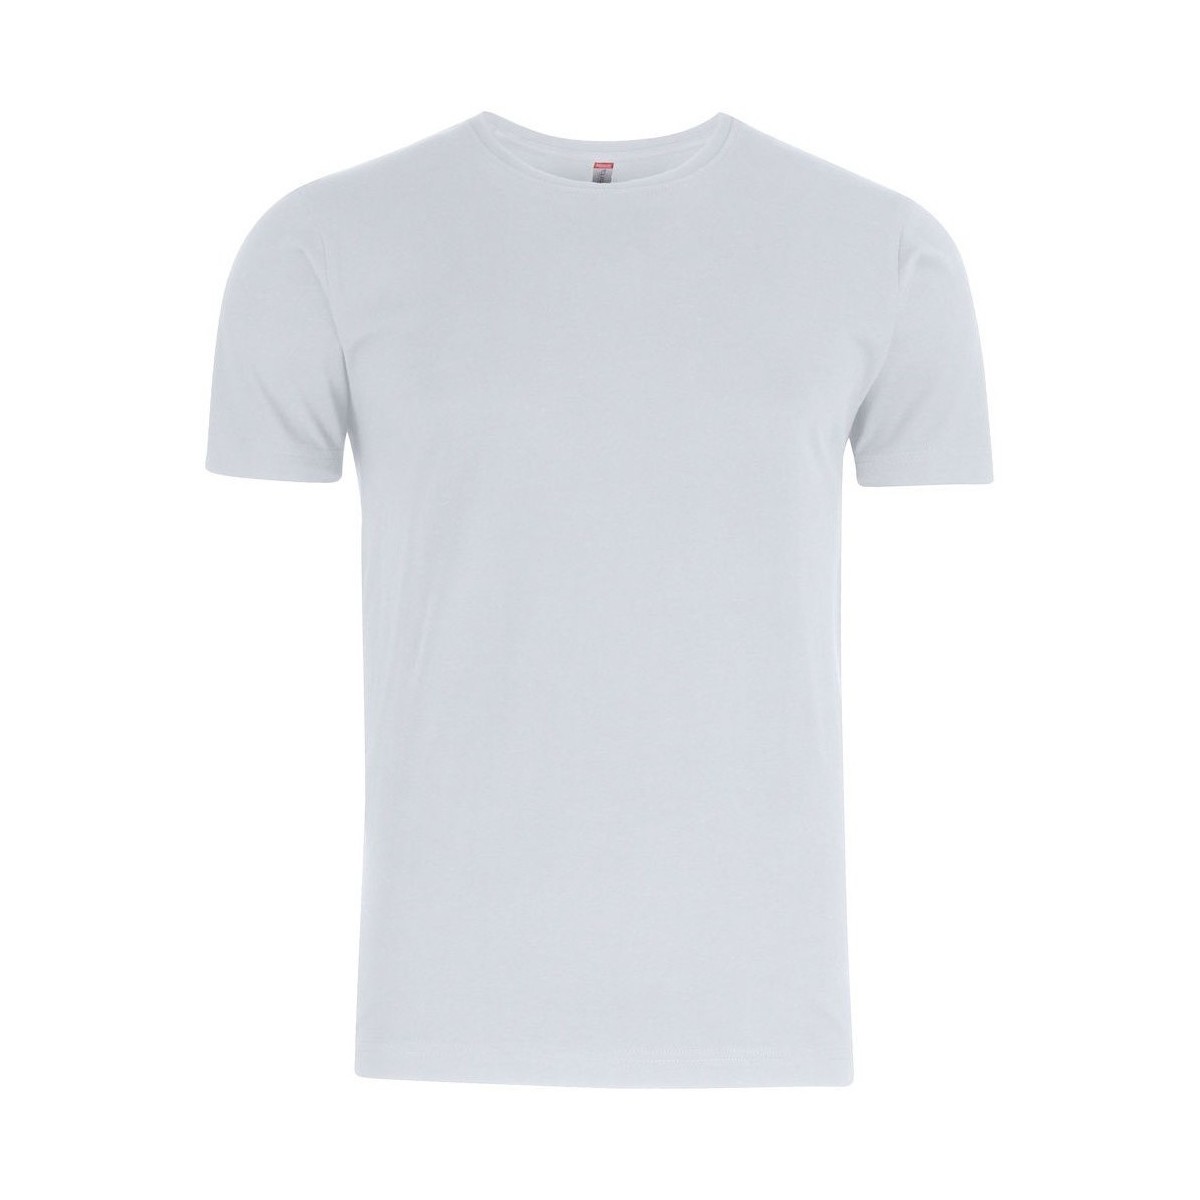 Abbigliamento Uomo T-shirts a maniche lunghe C-Clique Premium Bianco